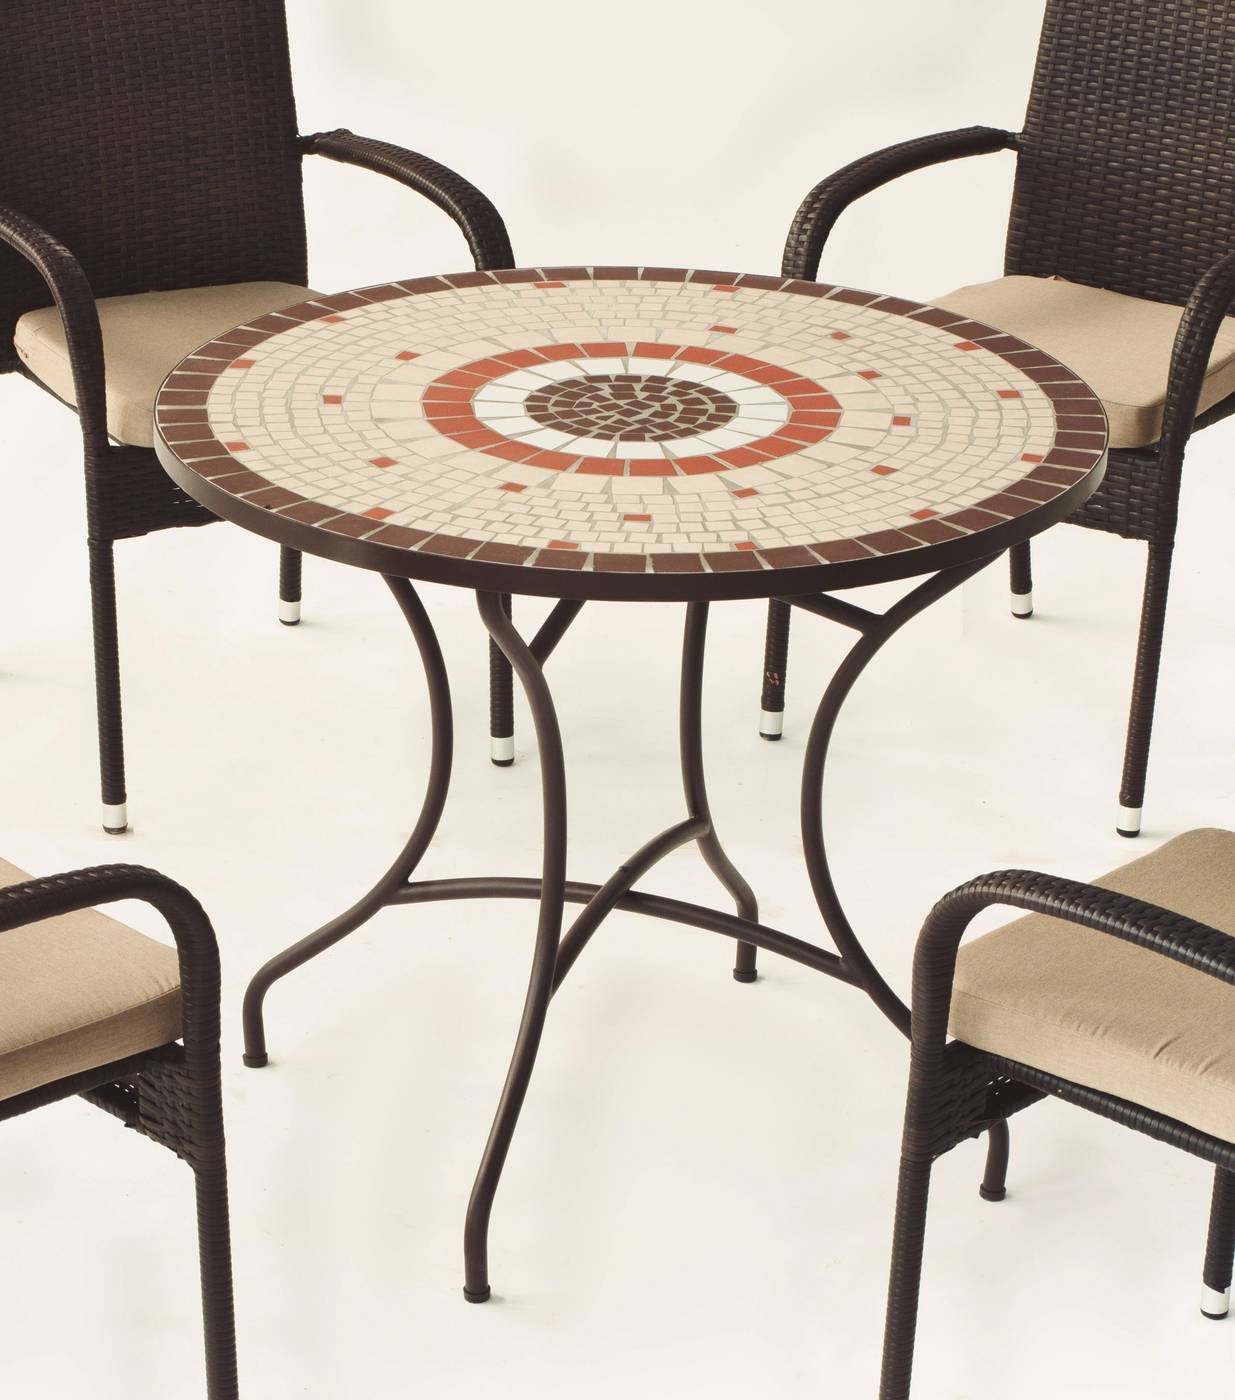 Conjunto Mosaico Malaya-Shifa - Conjunto de forja color bronce: mesa con tablero mosaico de 90 cm + 4 sillones con cojines asiento.